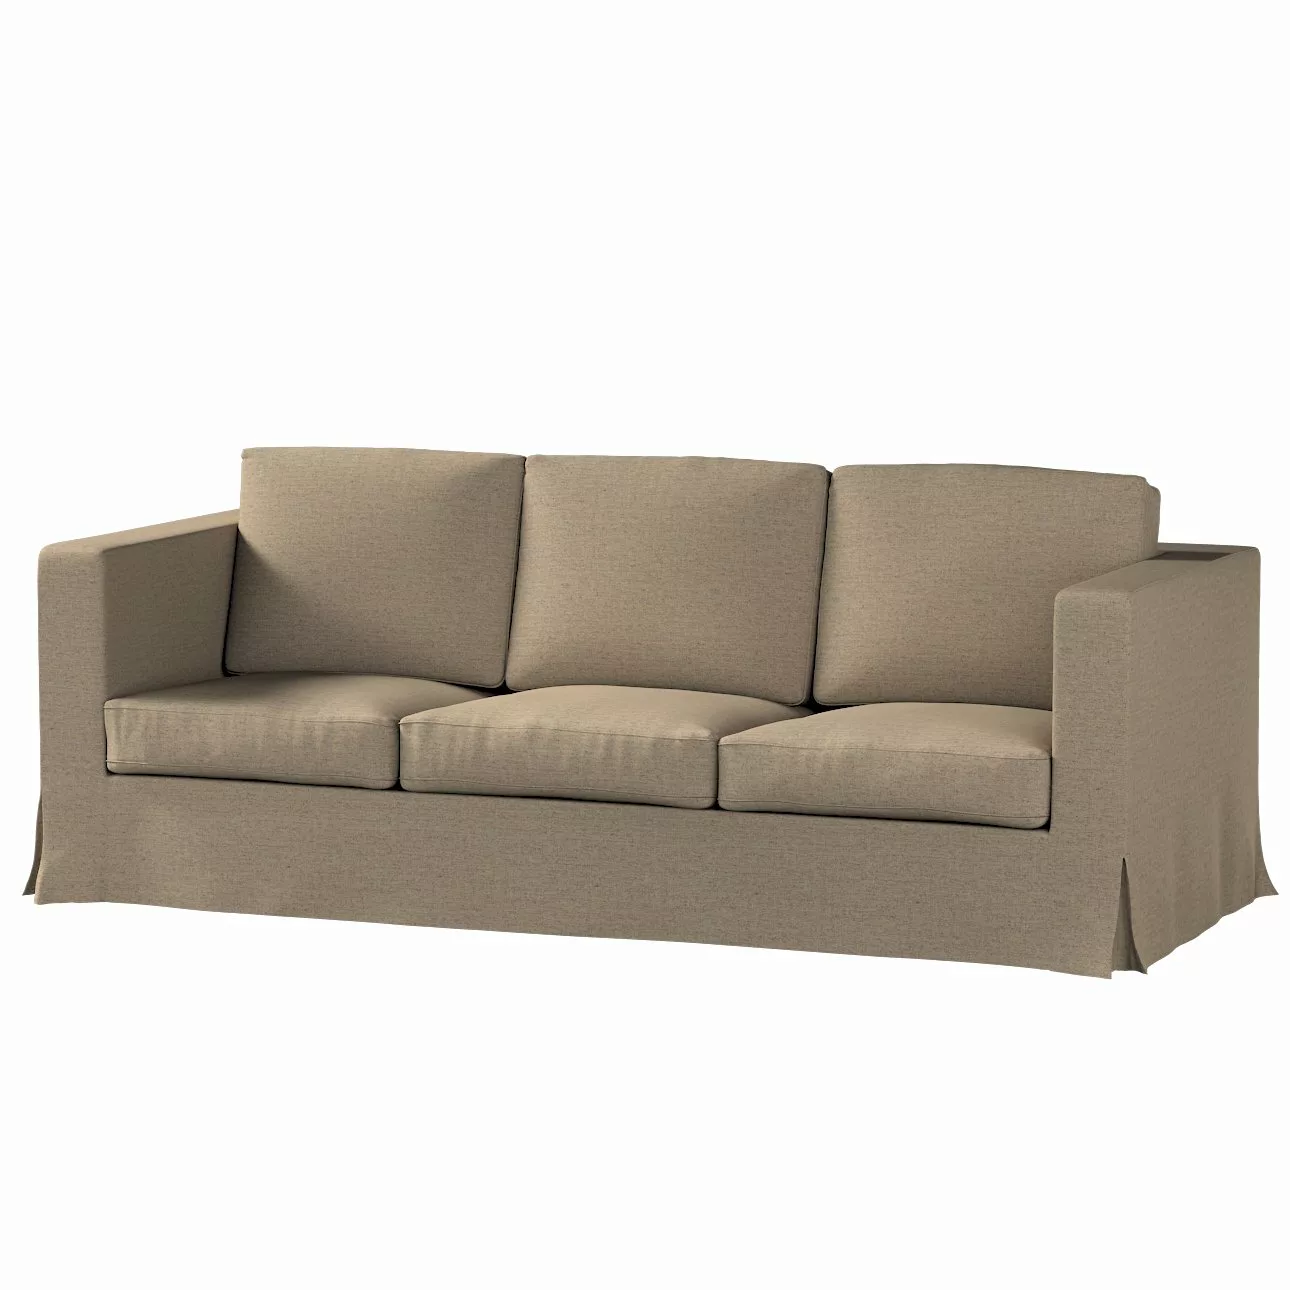 Bezug für Karlanda 3-Sitzer Sofa nicht ausklappbar, lang, beige, Bezug für günstig online kaufen